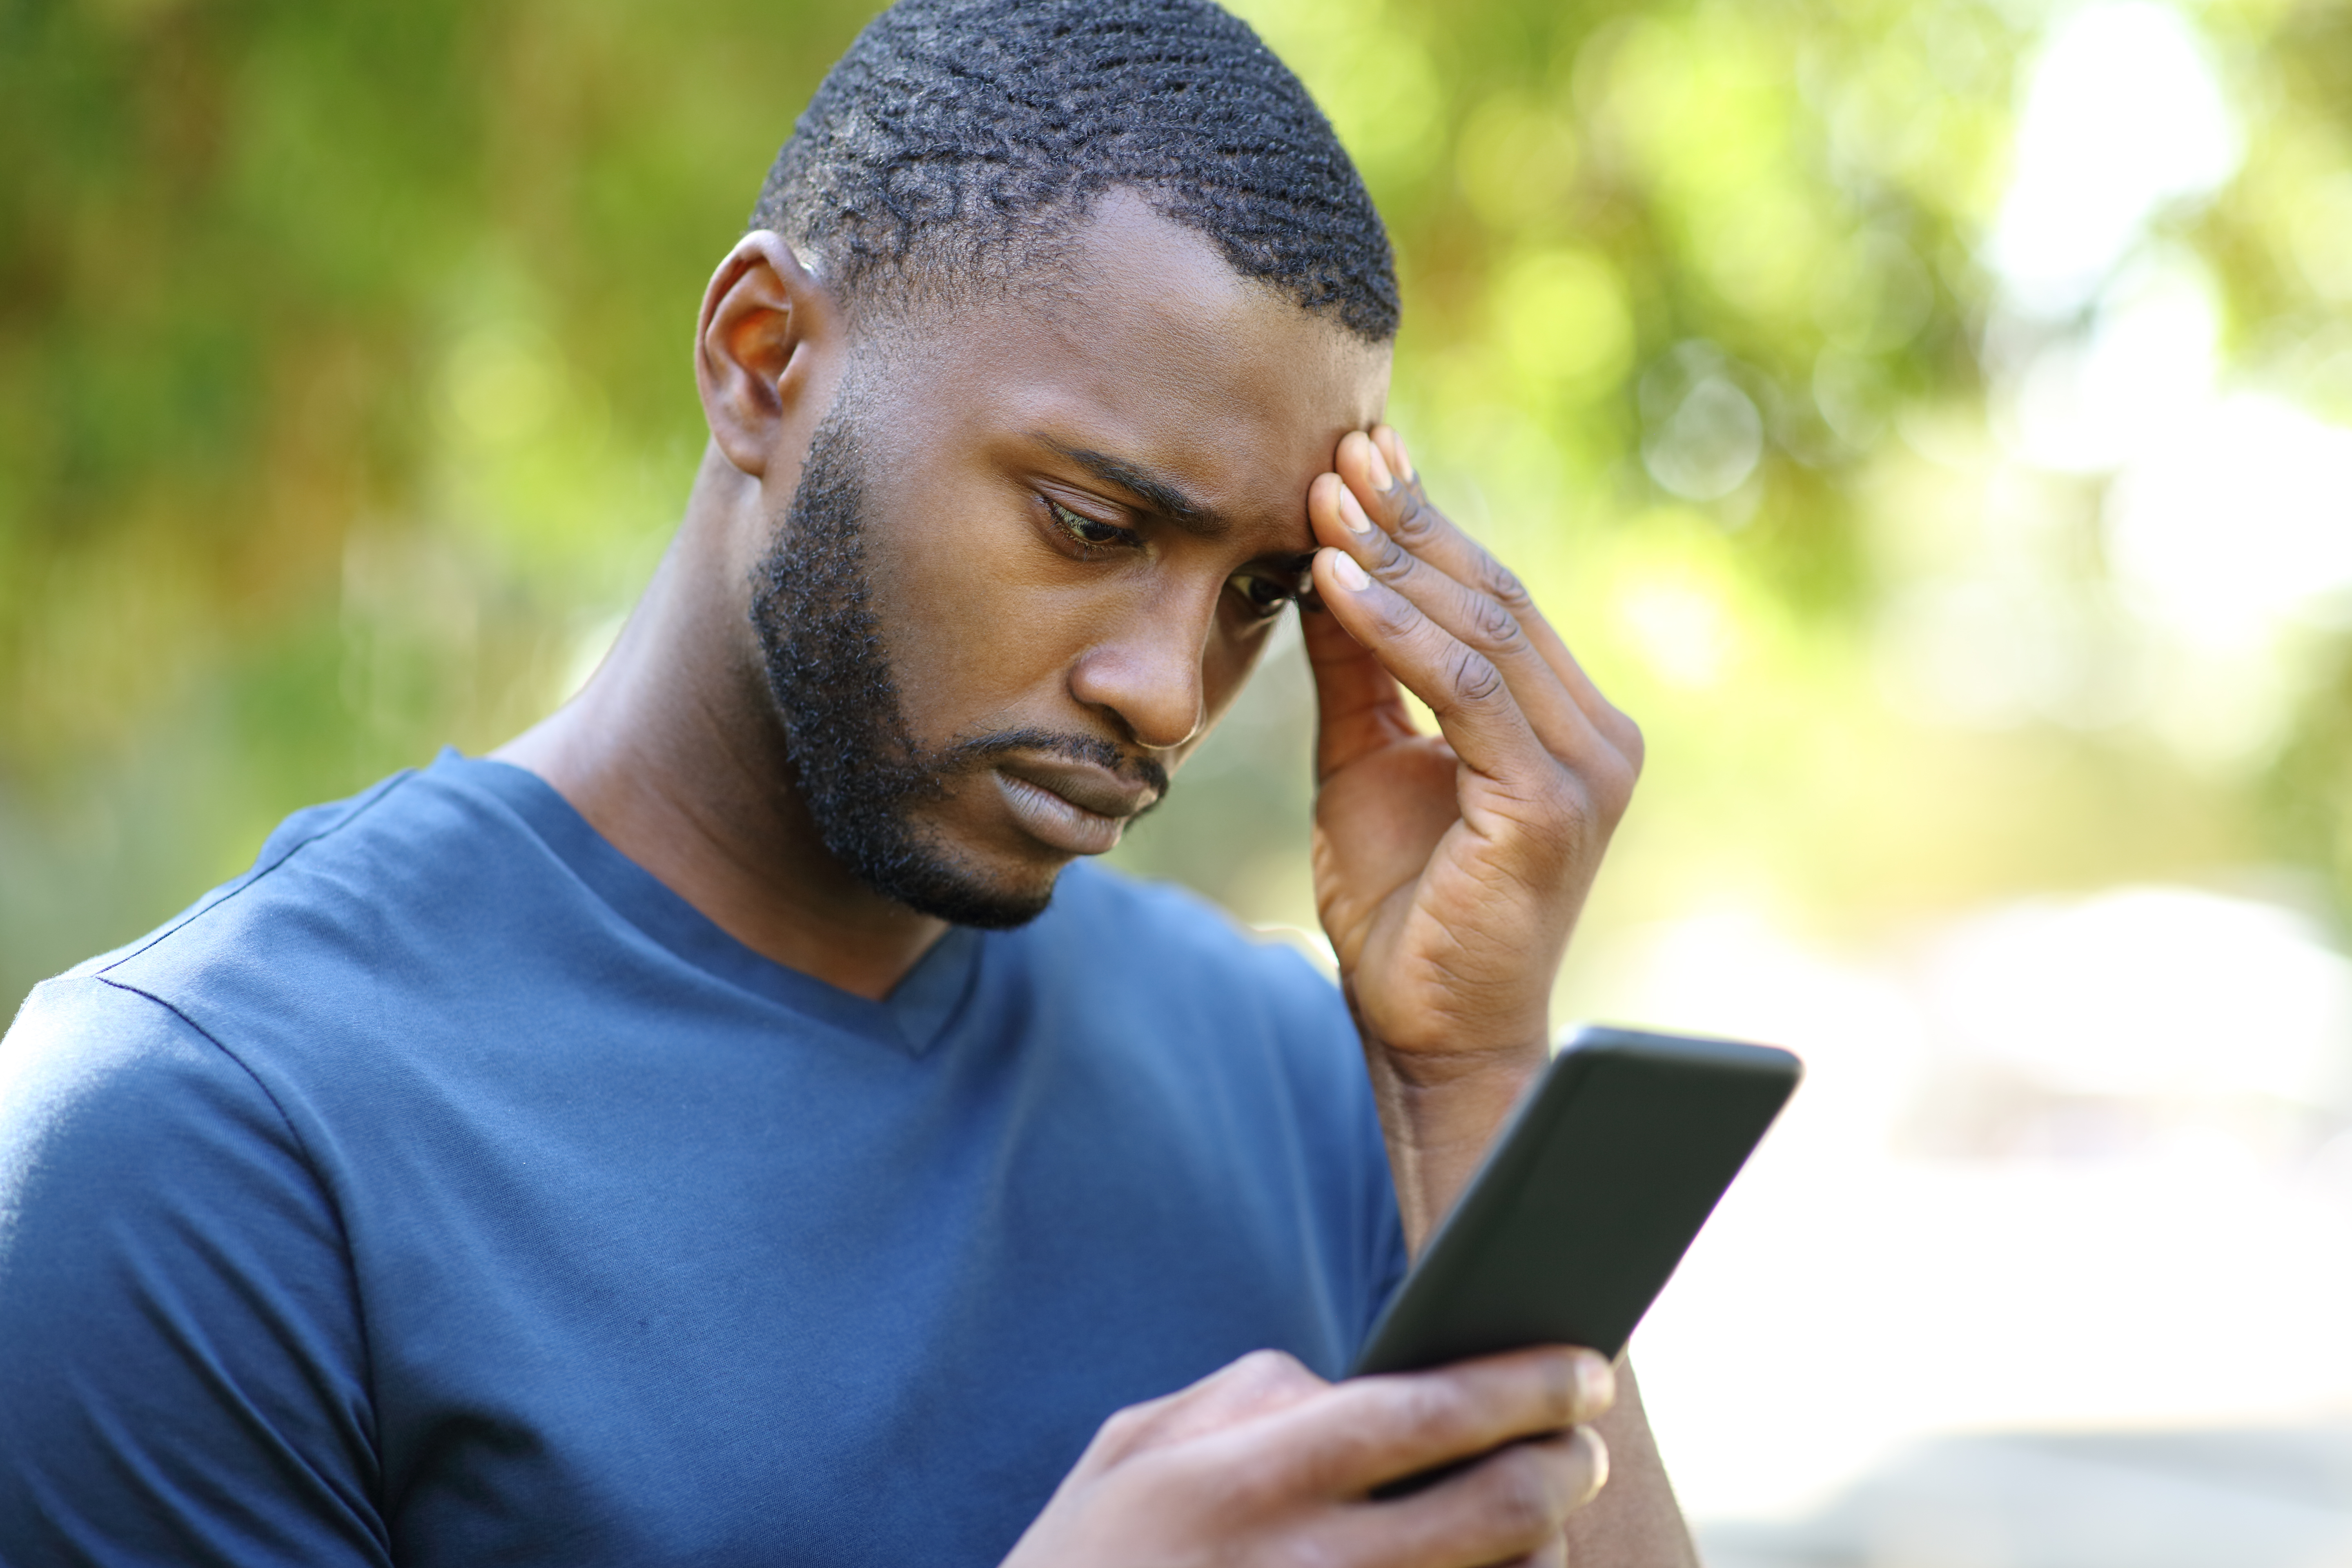 Un homme noir inquiet consulte son smartphone dans un parc | Source : Getty Images